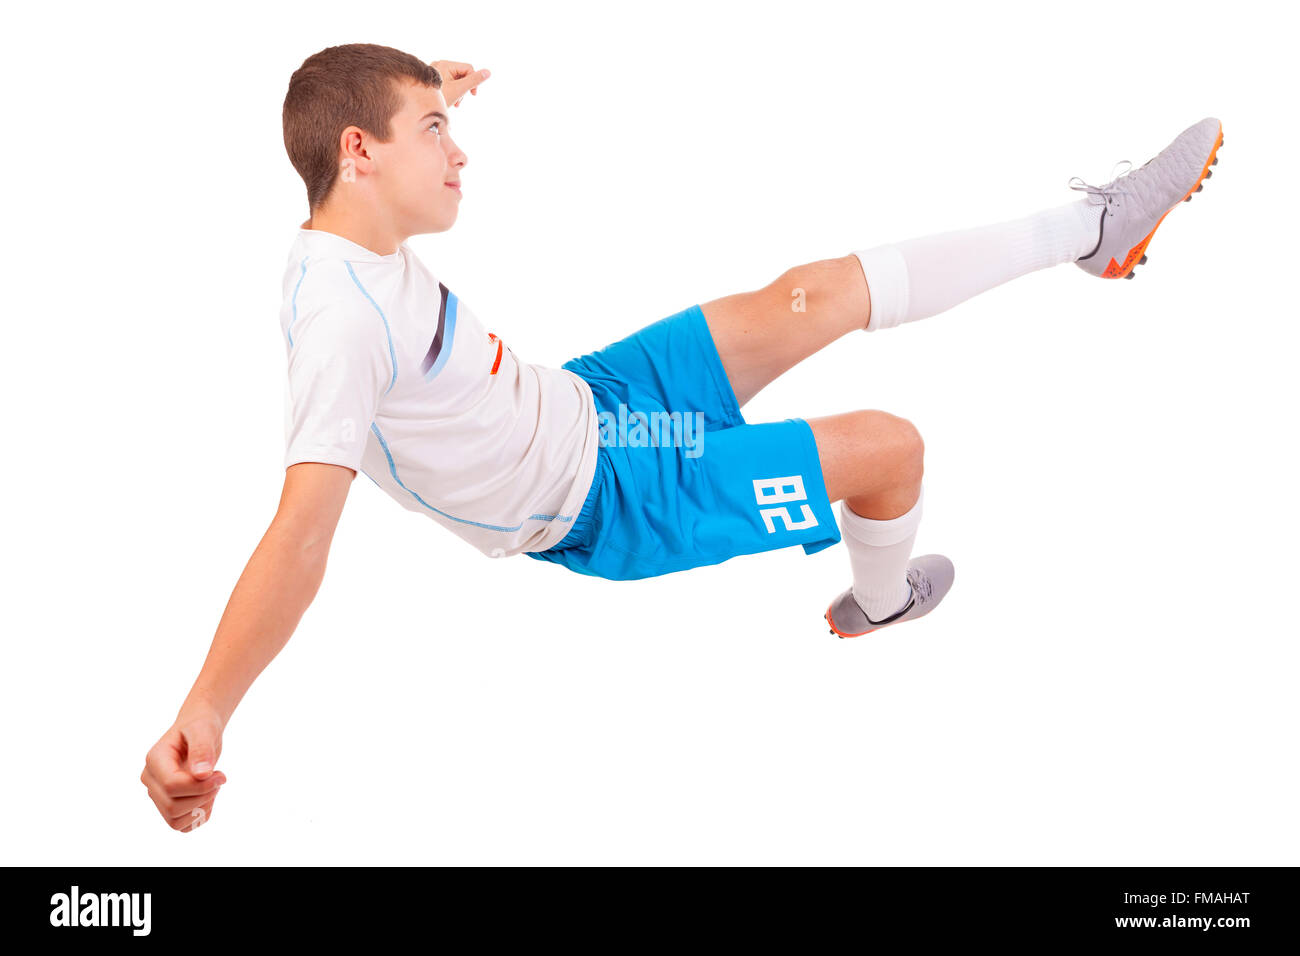 Profi-Fußballer machen einen akrobatischen tritt isoliert auf weißem Hintergrund Stockfoto